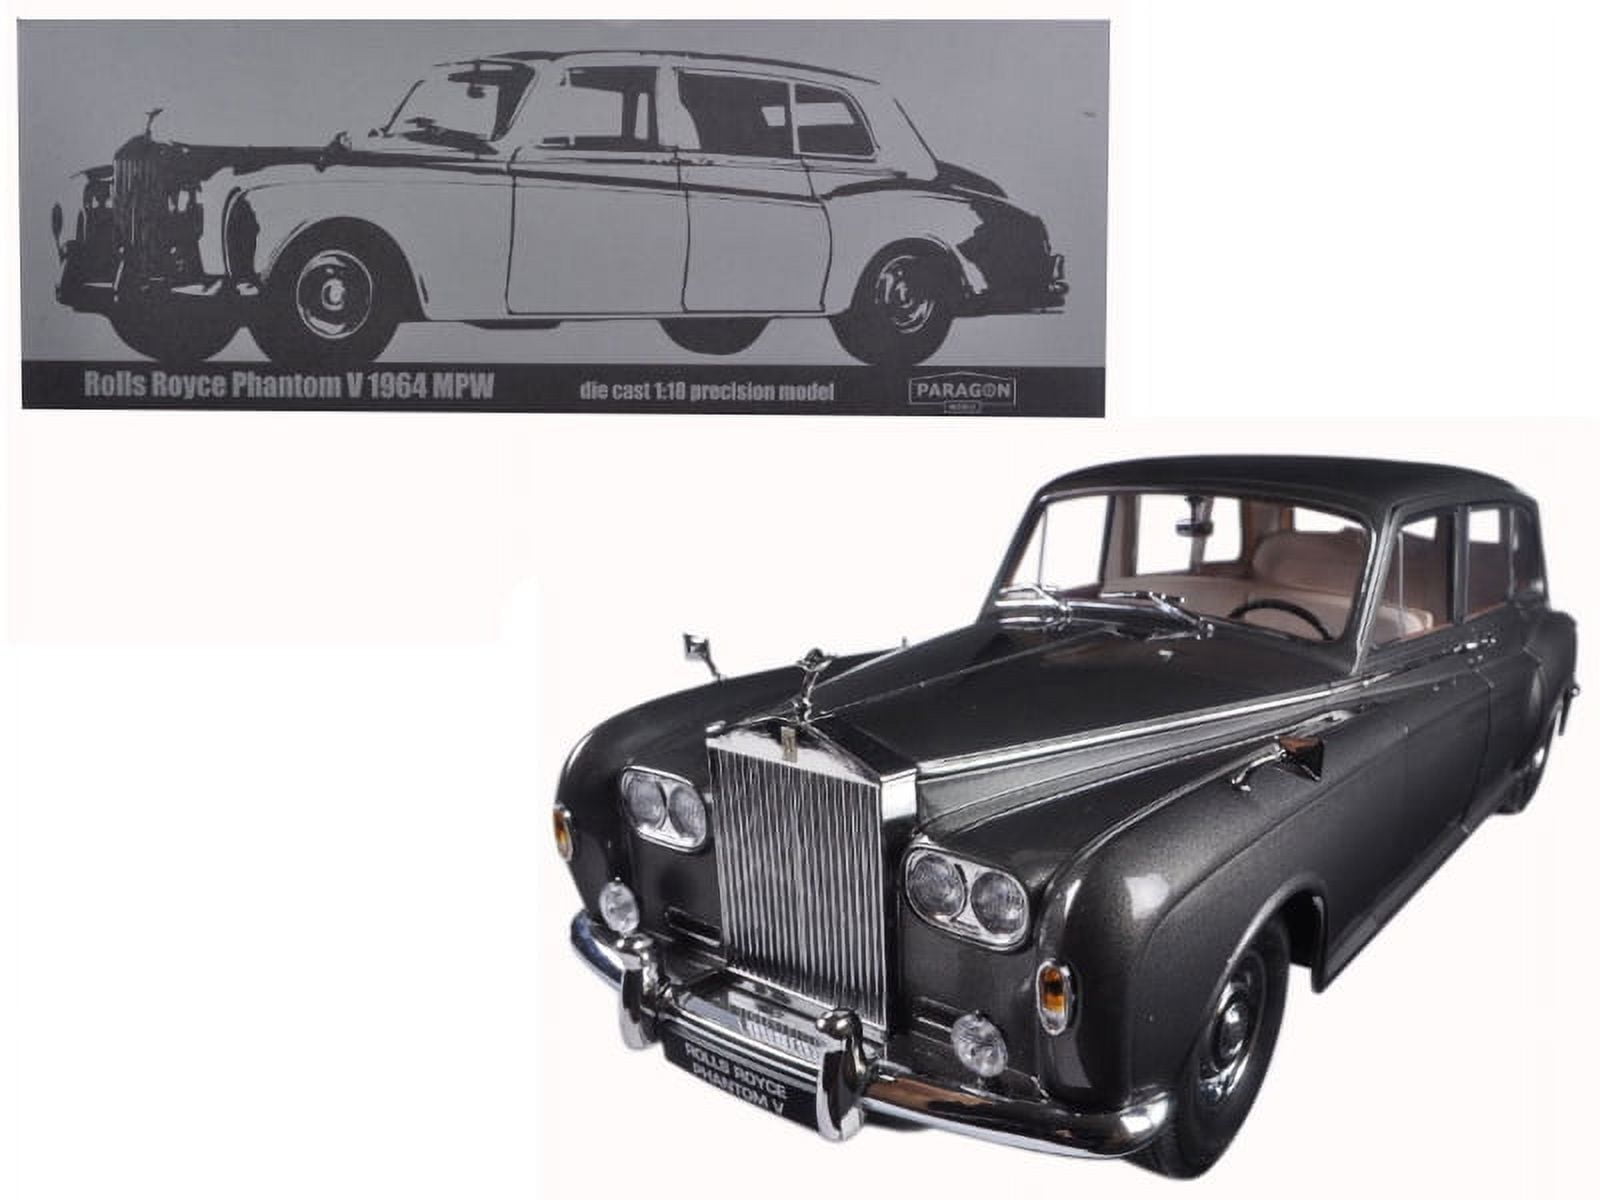 98214 1 Isto 18 1964 Rolls Royce Phantom V Mpw Lhd Diecast Model Car, Gunmetal Grey